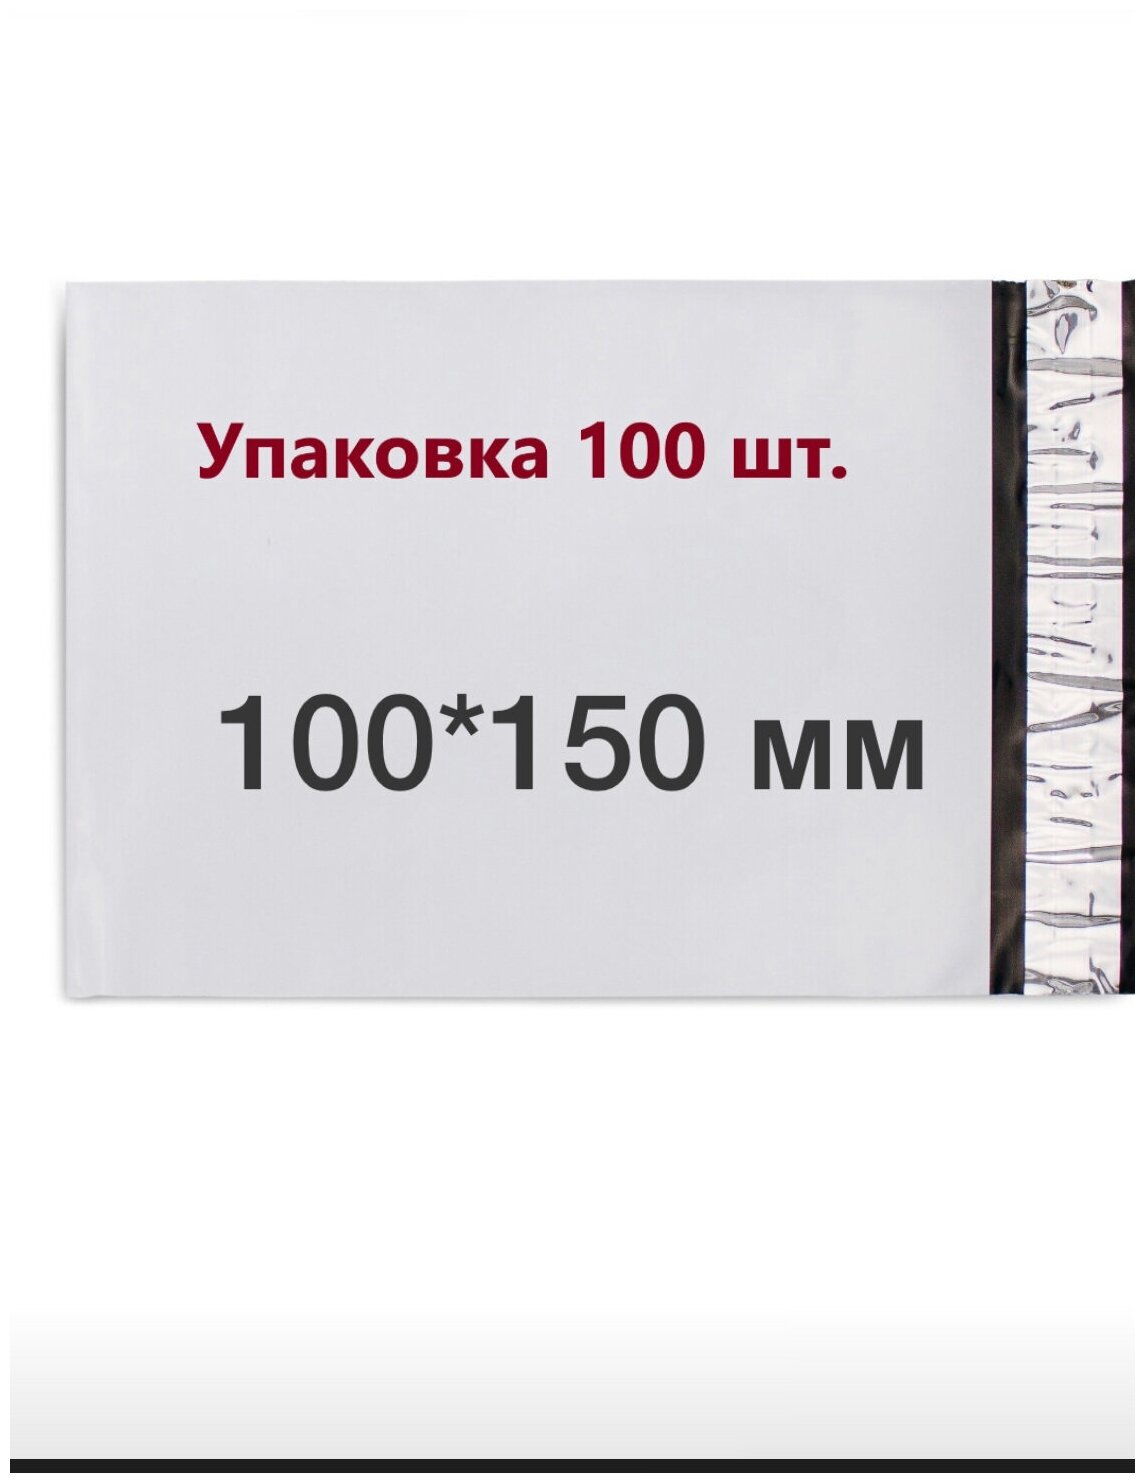 Курьерские пакеты упаковка для Ozon WB маркетплейсов 100*150 +40 мм (50мкм). С клеевым клапаном